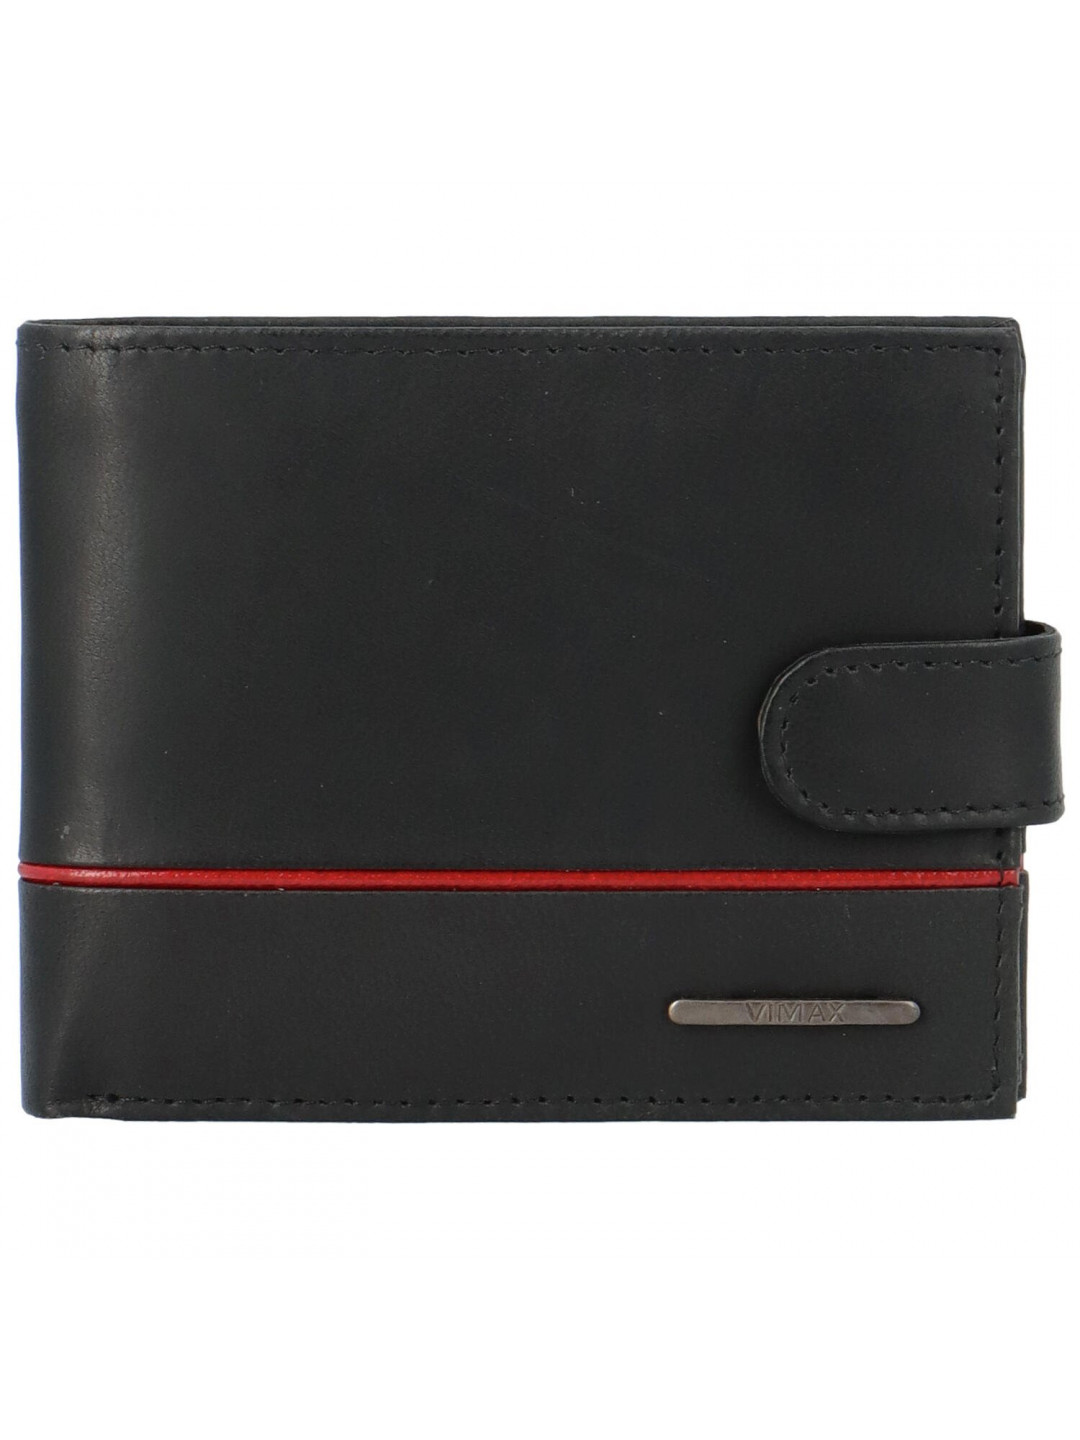 Pánská kožená peněženka černá – Vimax Vallik